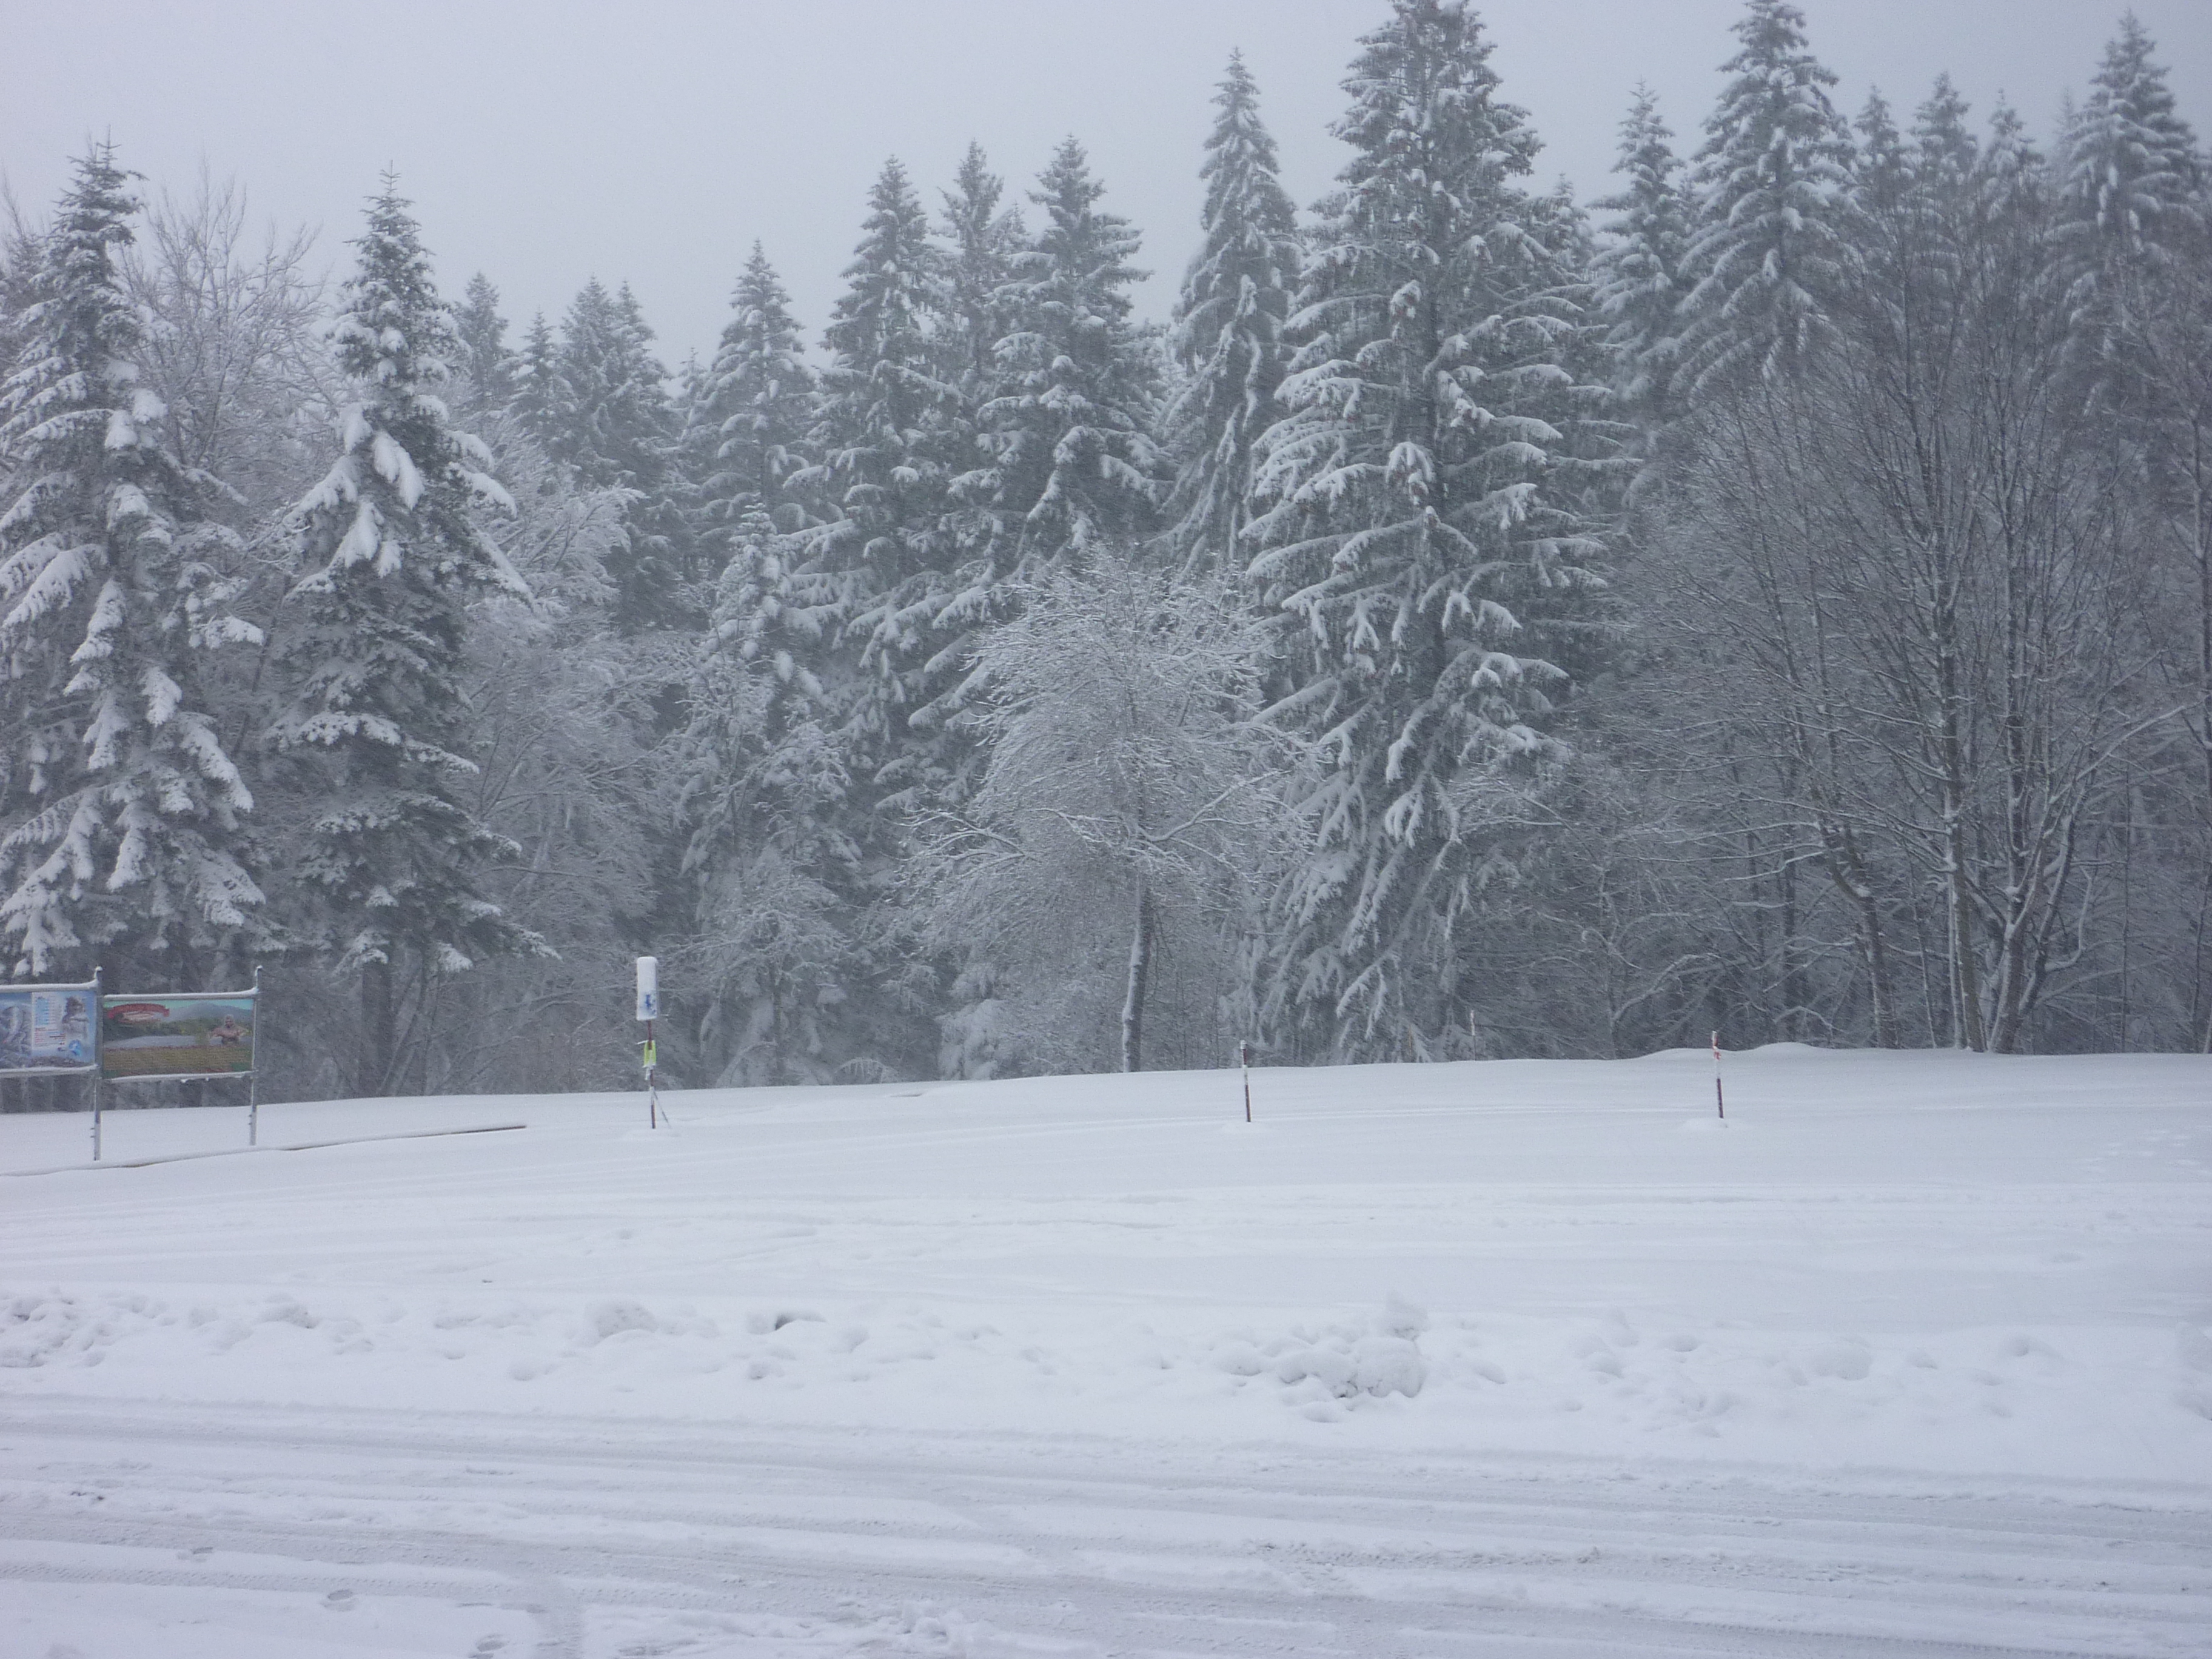 Sníh zasypává horské i podhorské oblasti a způsobuje problémy řidičům